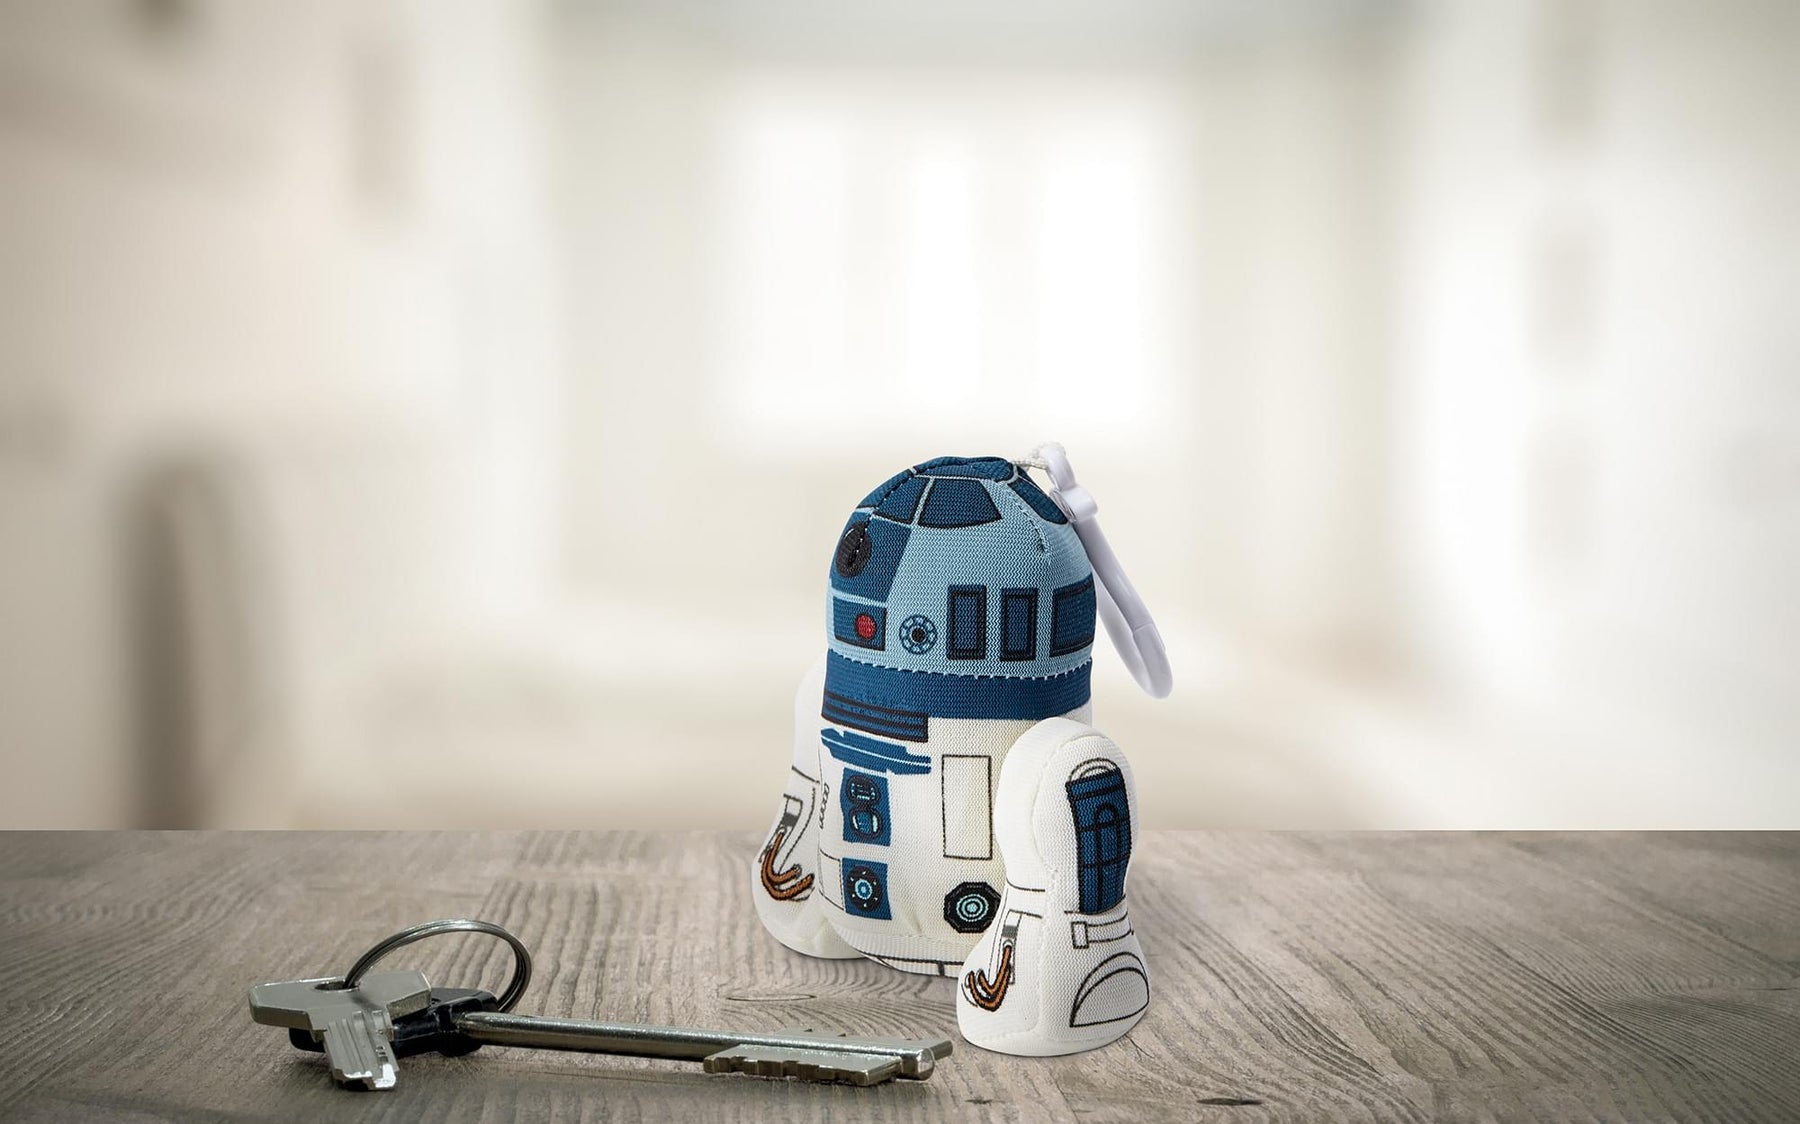 Star Wars Mini Talking Plush Toy Clip On - R2D2